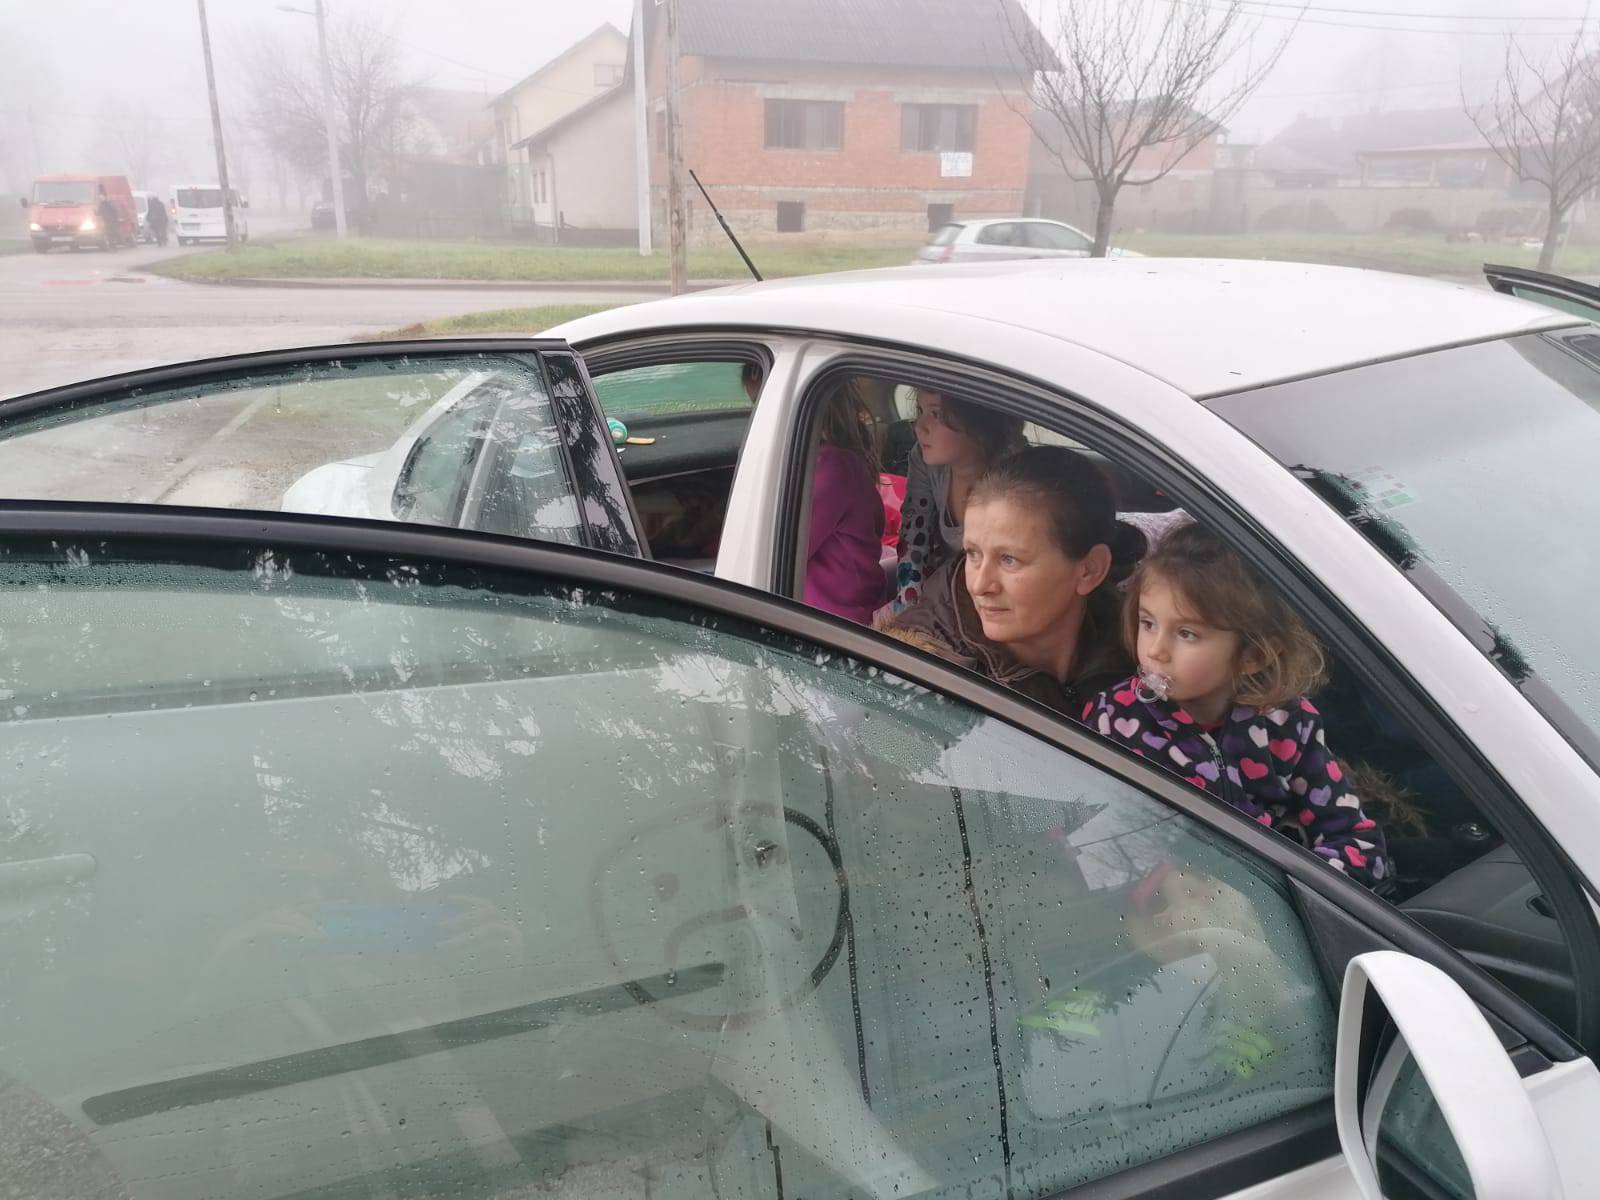 'Spavamo u autu s troje djece, a nemamo novca ni za benzin pa ne možemo više paliti grijanje'